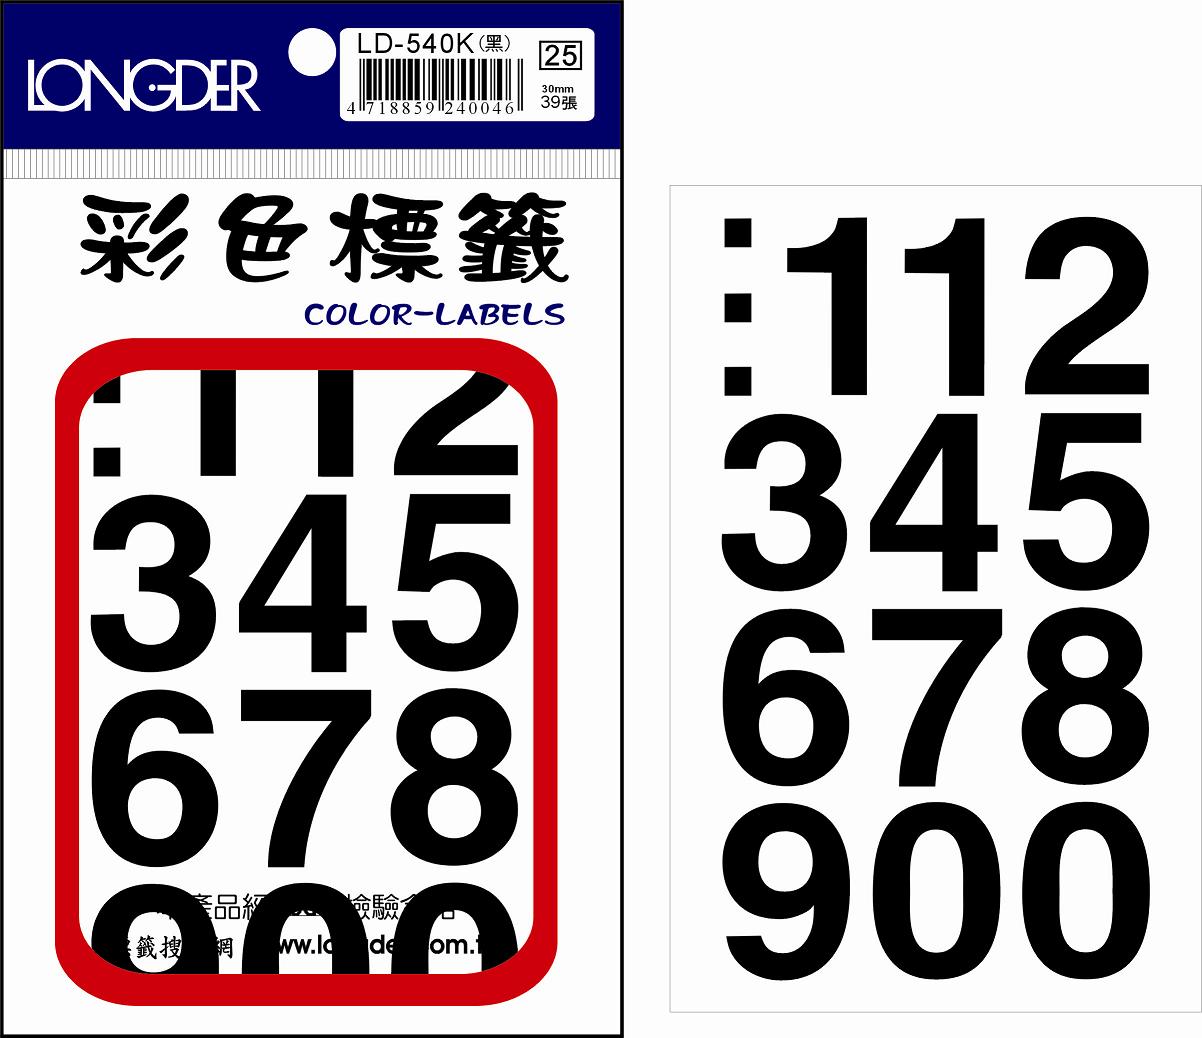 龍德 彩色數字標籤 LD-540K (30mm) /包